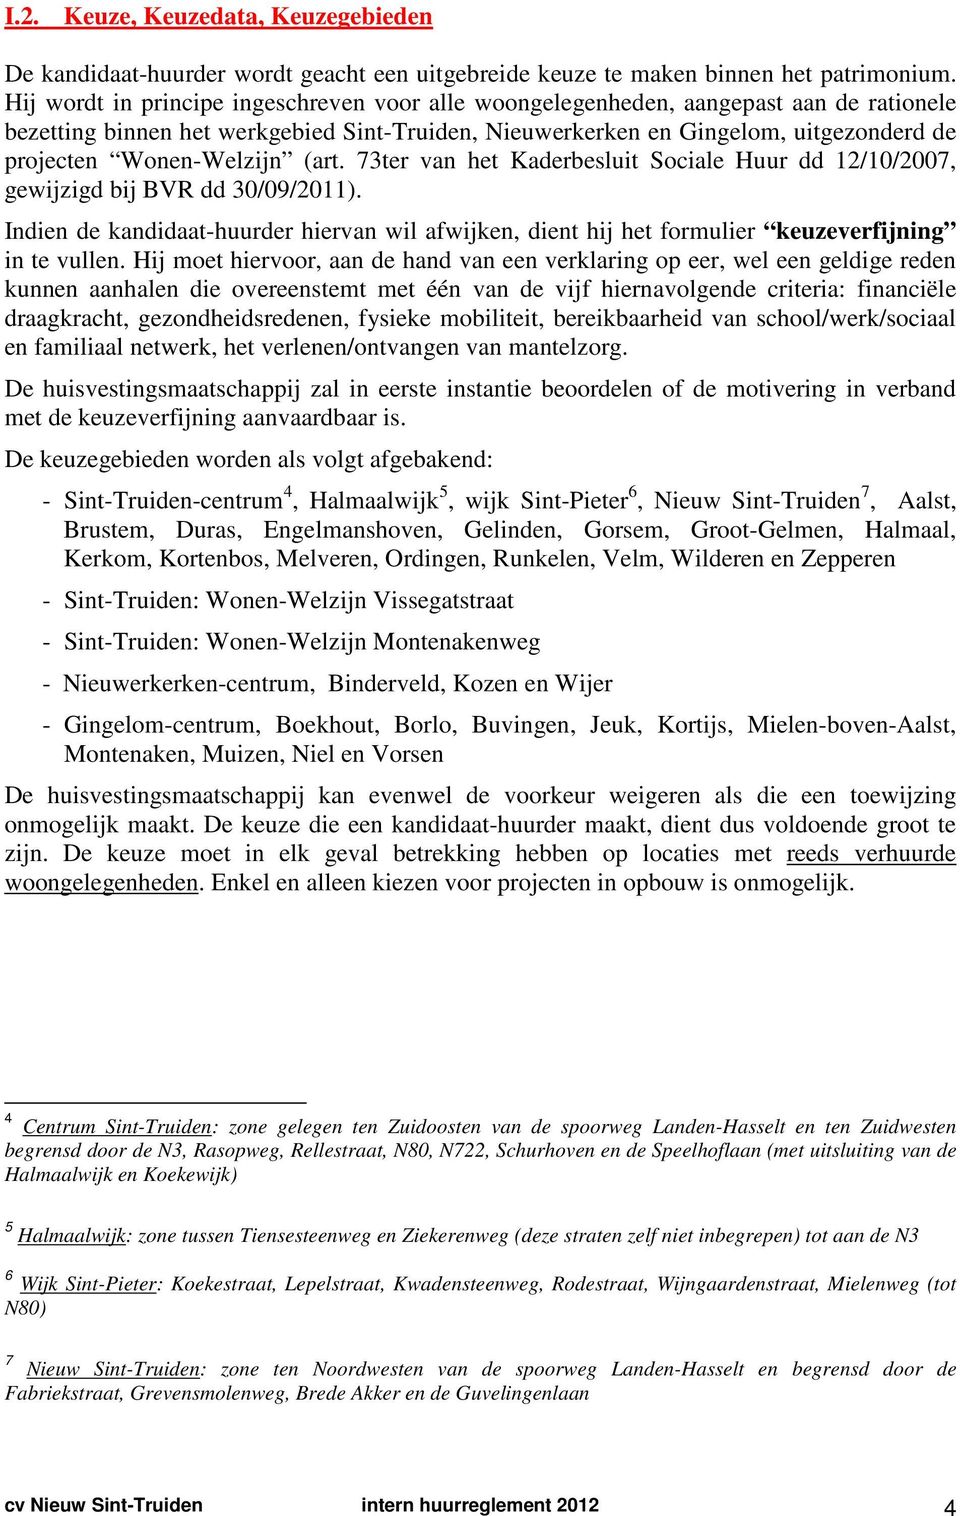 Wonen-Welzijn (art. 73ter van het Kaderbesluit Sociale Huur dd 12/10/2007, gewijzigd bij BVR dd 30/09/2011).